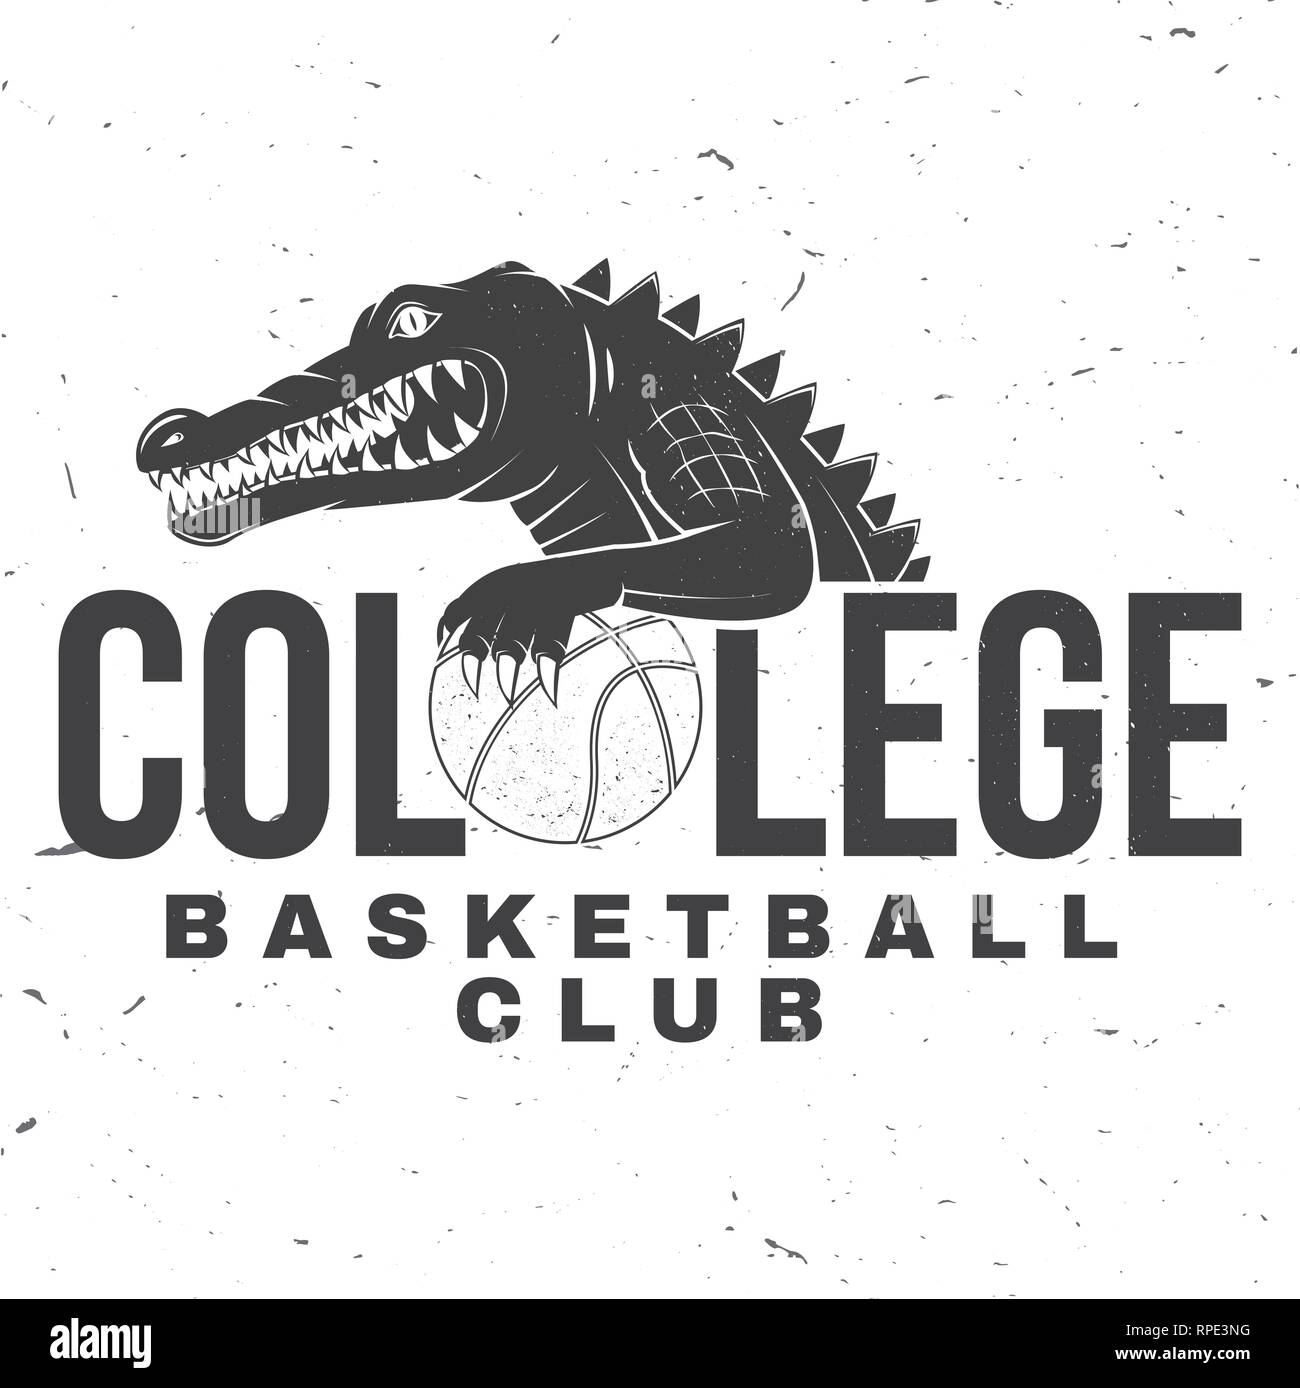 Basketball College Club Abzeichen. Vector Illustration. Konzept für T-Shirt, Druck, Stempel oder T-Stück. Vintage Typografie Design mit Krokodil- und Basketball Ball Silhouette. Stock Vektor